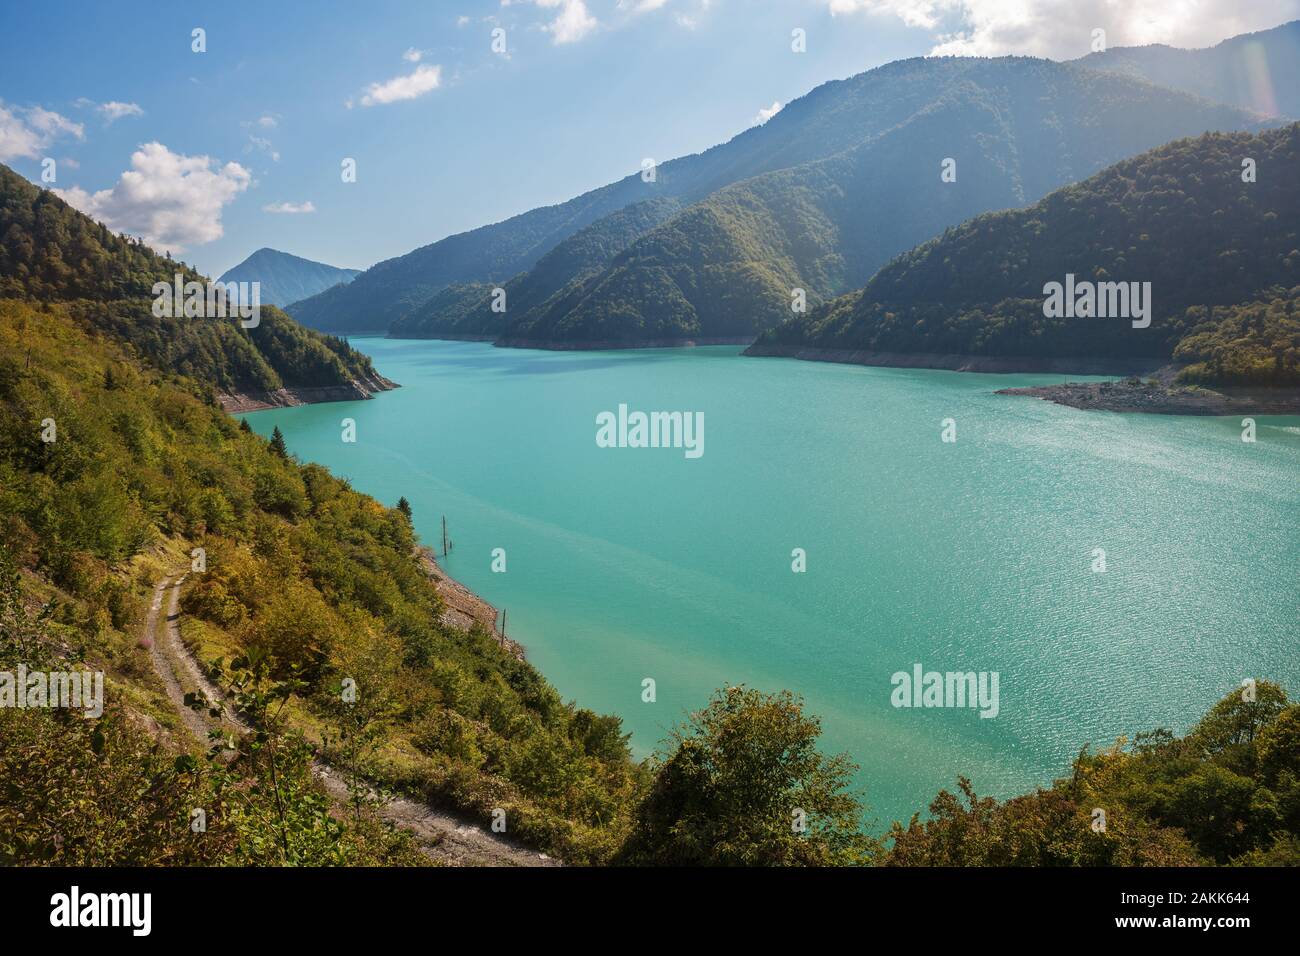 Réservoir de Jvari sur la rivière Ingouri Enguri (). Magnifique paysage de montagne. Avec le lac d'eau turquoise entourée de chaînes de montagnes du Caucase. Geor Banque D'Images